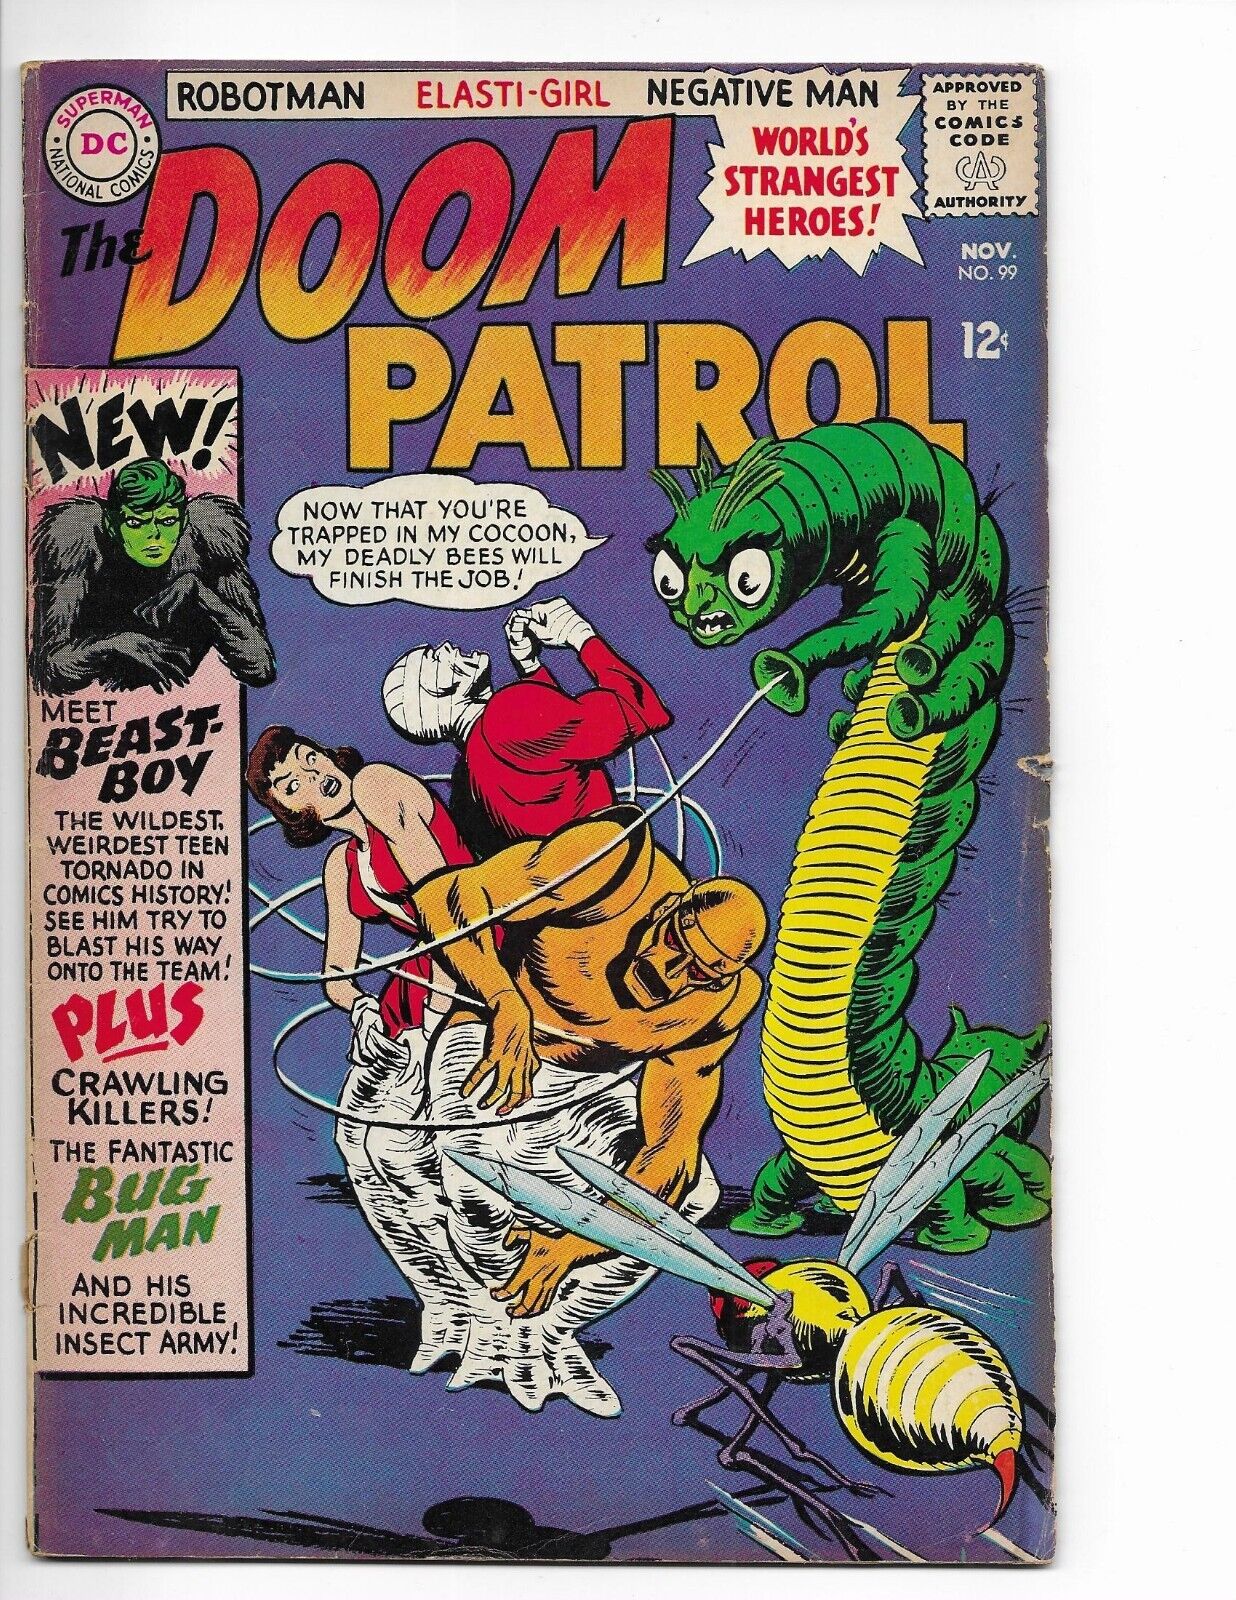 DOOM PATROL # 99 1st app BEAST BOY  108 113 121  Doom Patrol Index 1 & 2, Digest